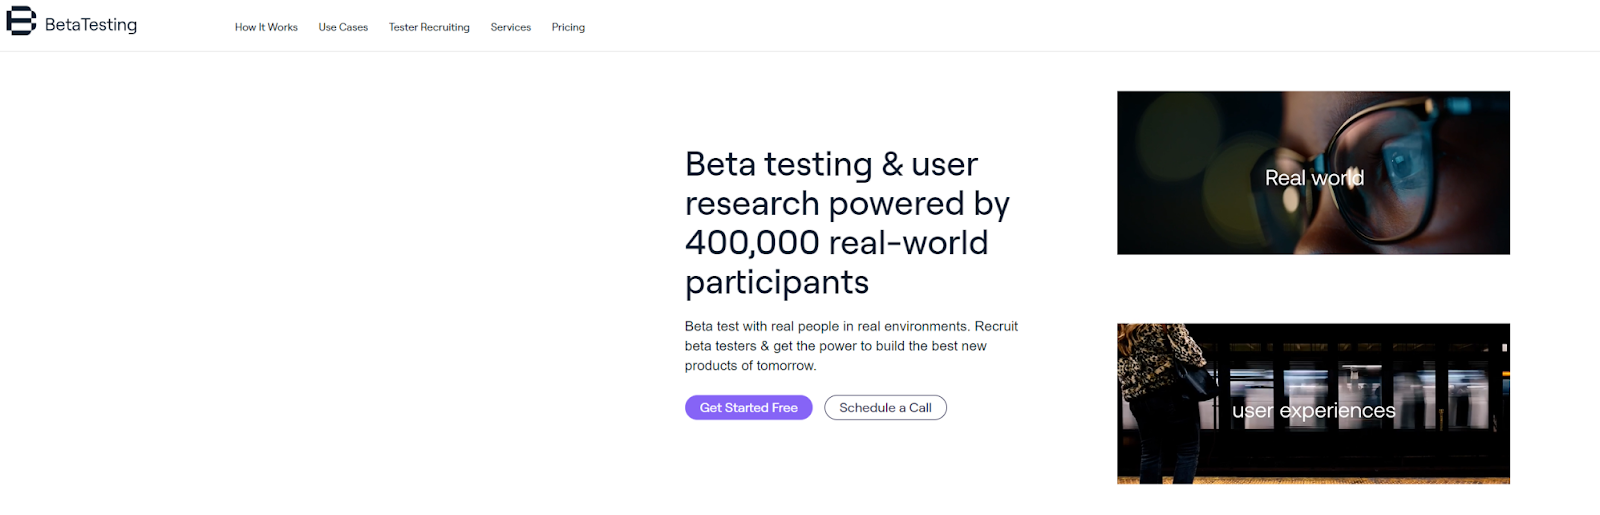 Betatesting.com website